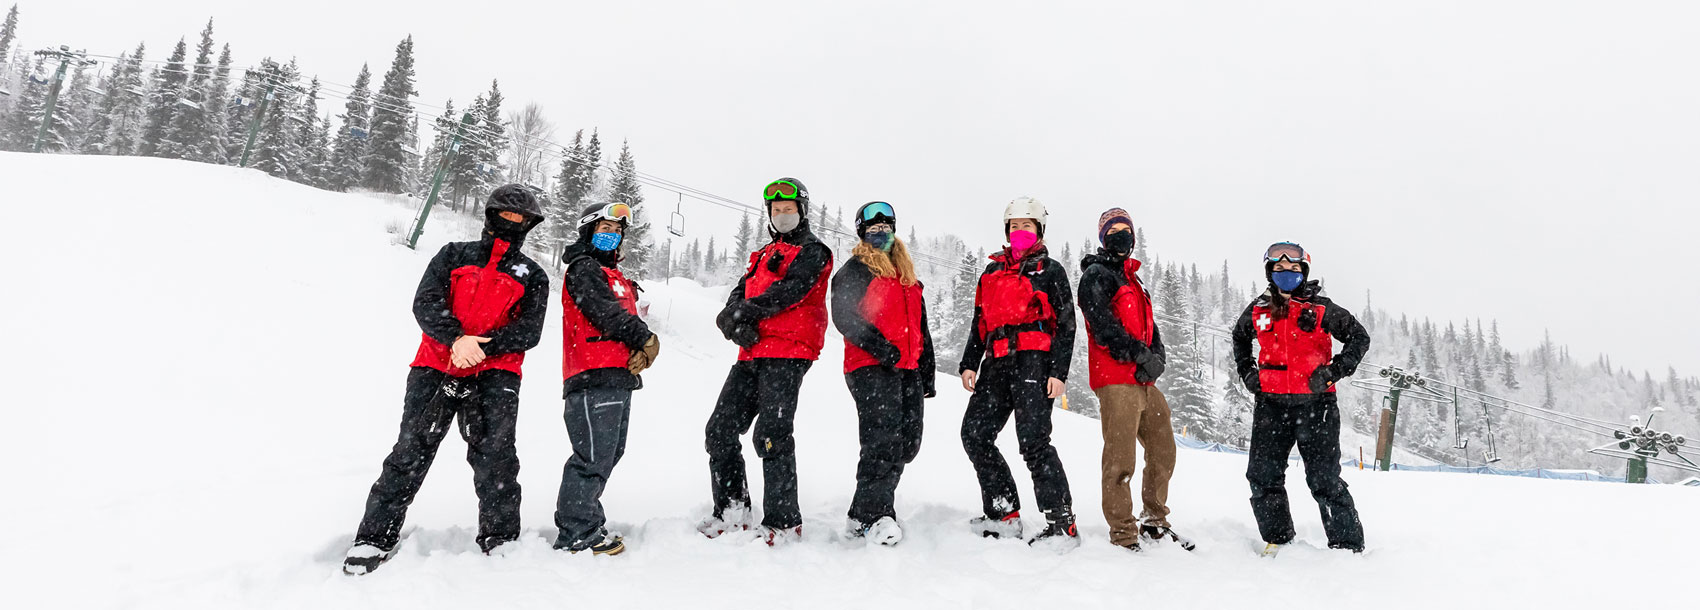 Ski patrol team